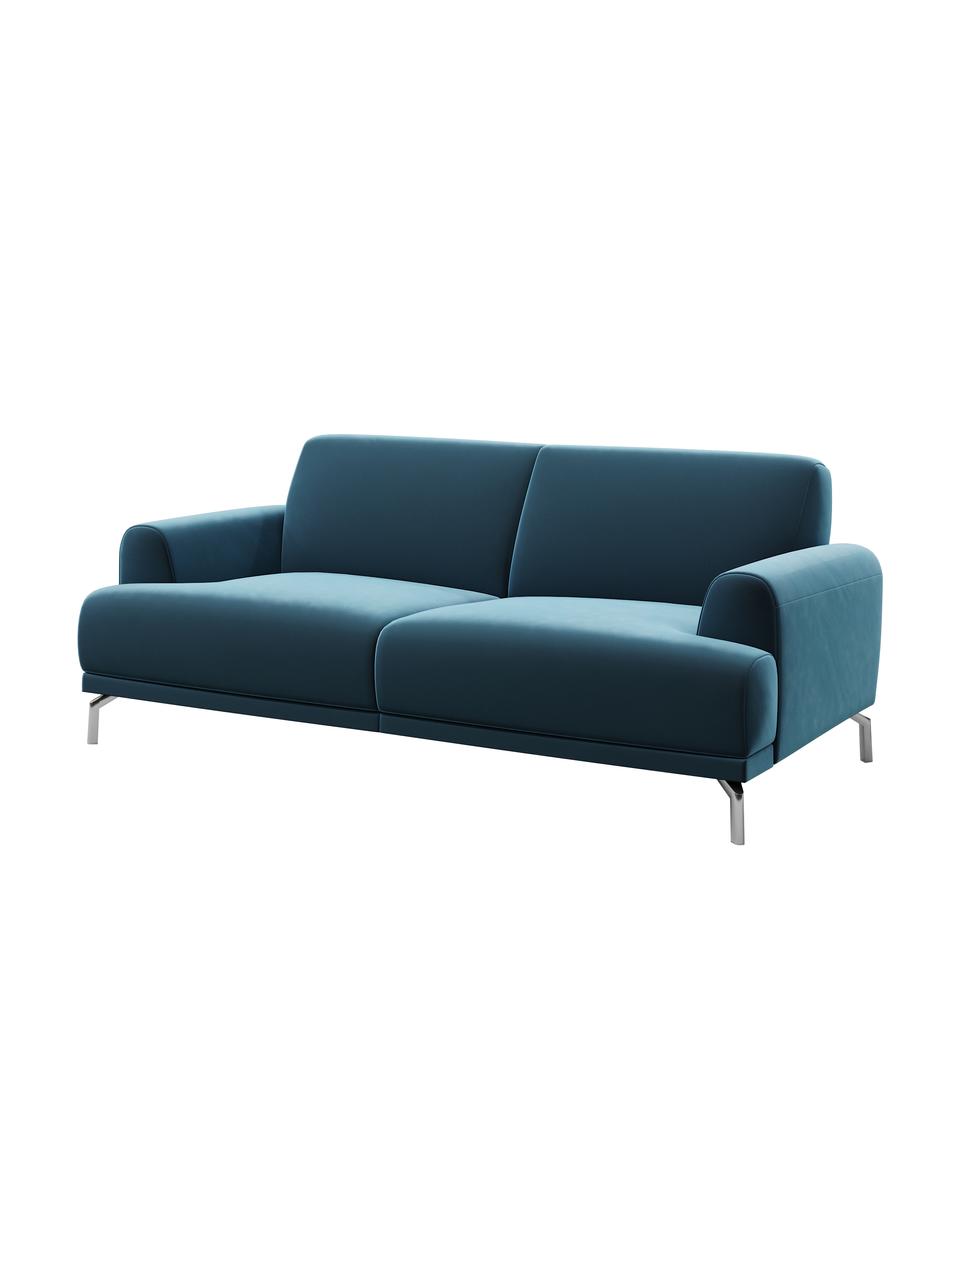 Sofa z aksamitu Puzo (2-osobowa), Tapicerka: 100% aksamit poliestrowy,, Nogi: metal lakierowany, Ciemny niebieski, S 170 x G 84 cm